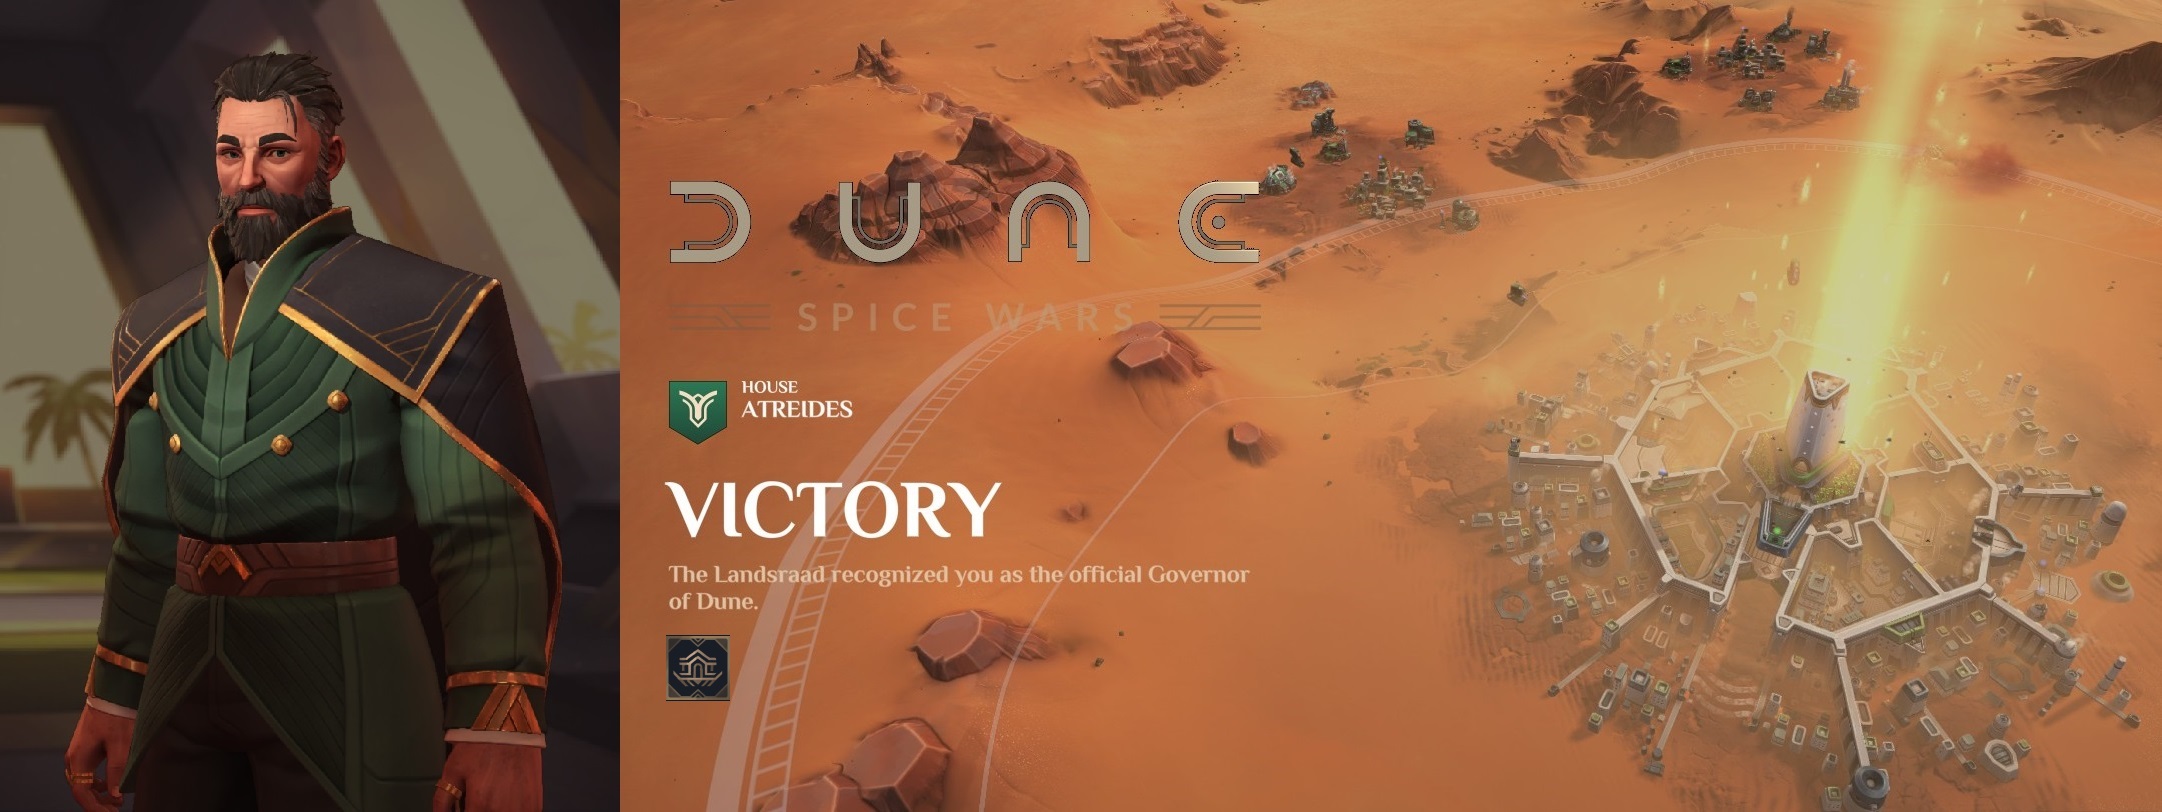 Dune: Spice Wars - A Mentat's guide to Arrakis - House Atreides - 87C7CF7